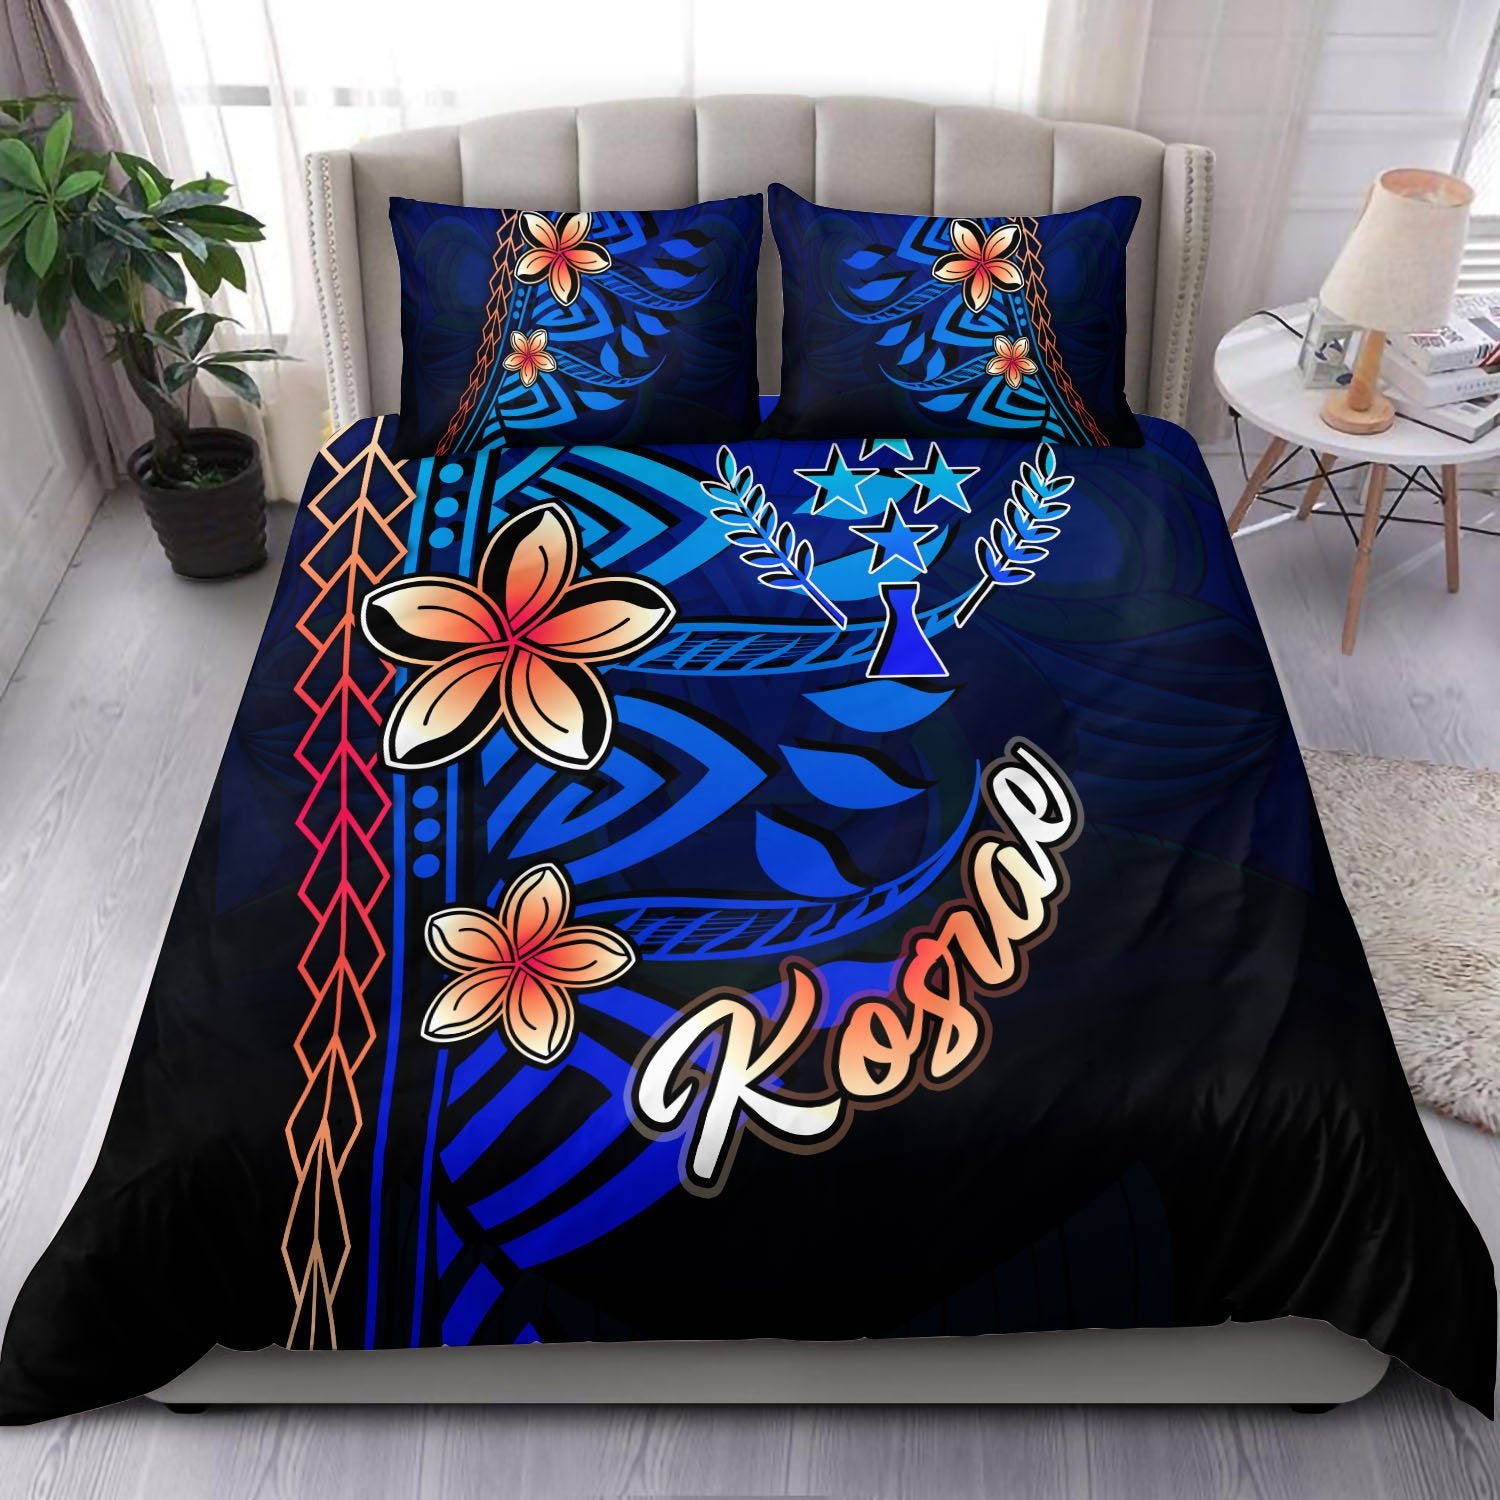 Kosrae Bedding Set - Vintage Tribal Mountain Blue - Polynesian Pride